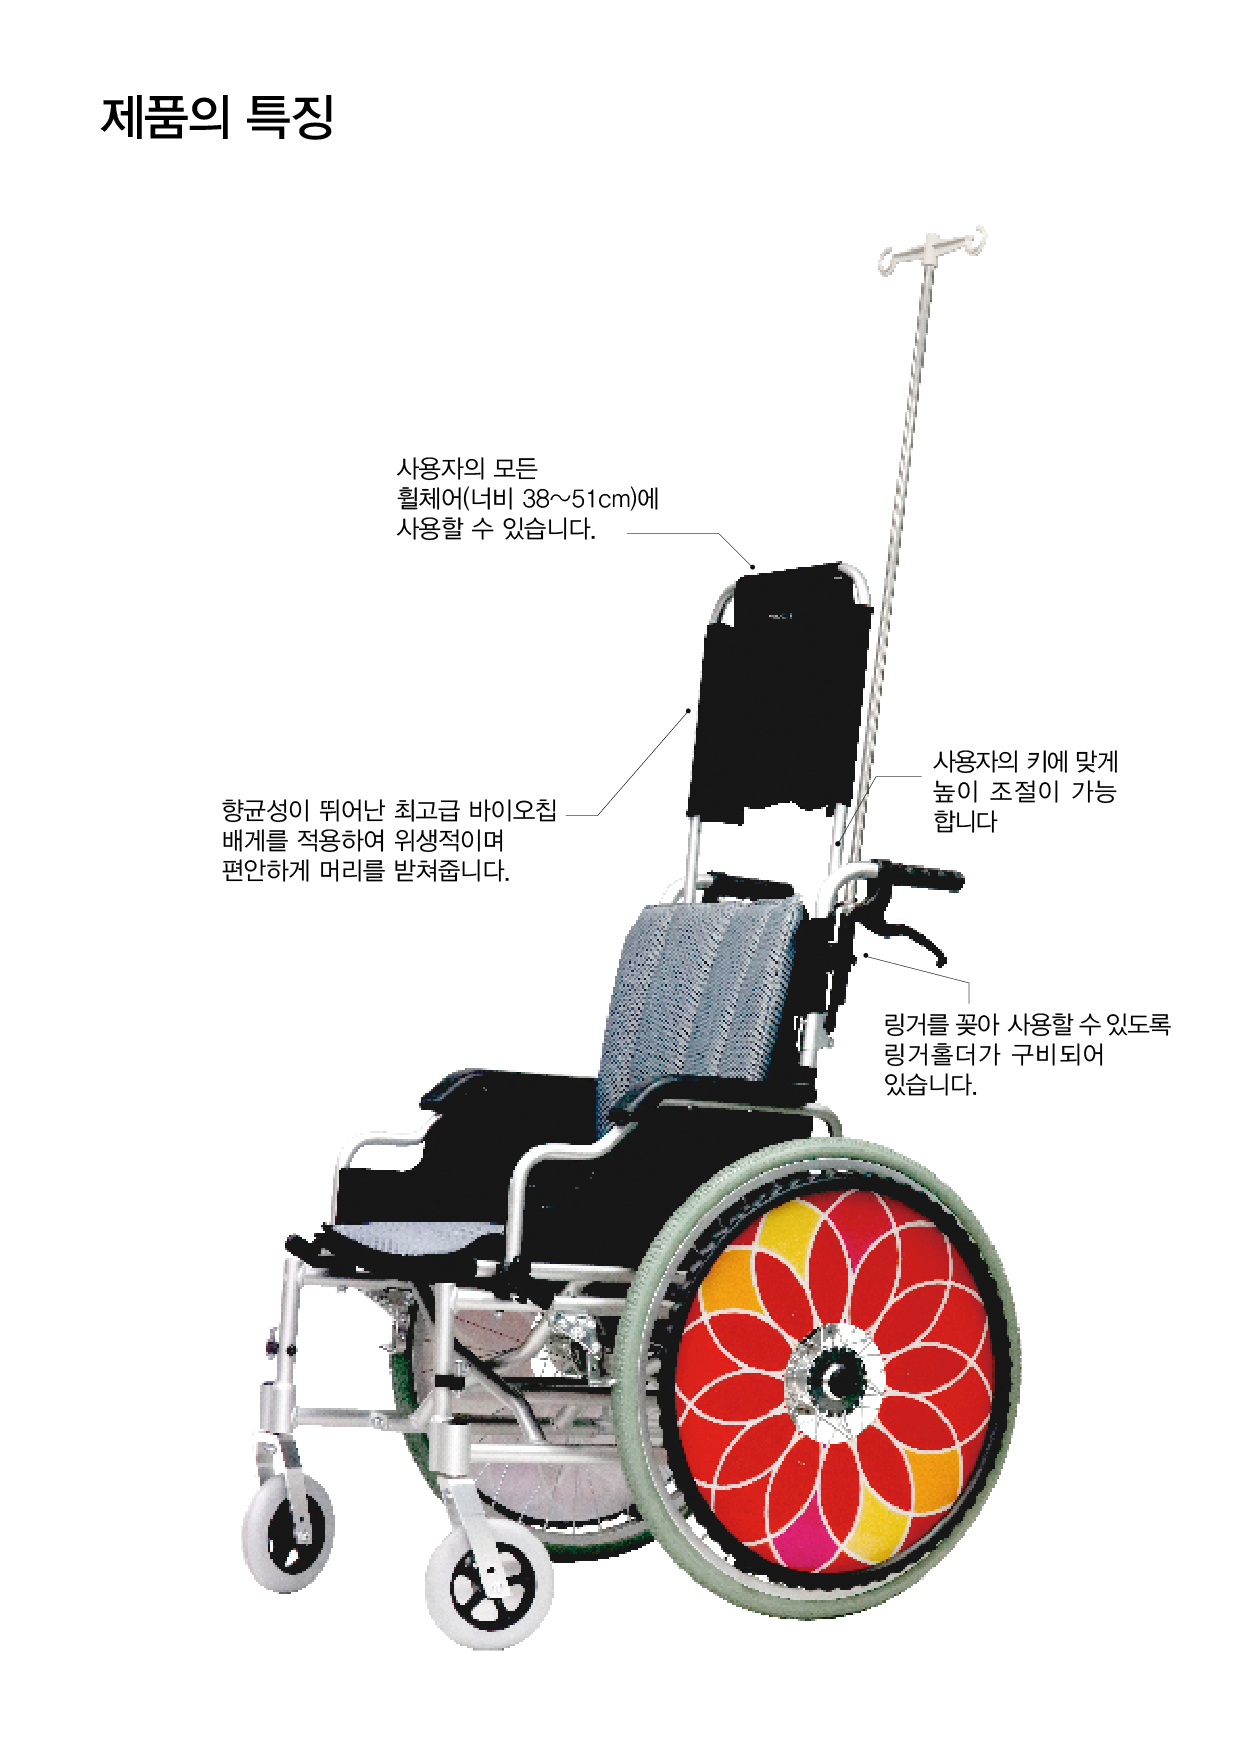 제품의 특징
사용자의 모든 휠체어(너비 38~51cm)에 사용할 수 있습니다.
향균성이 뛰어난 최고급 바이오칩 배게를 적용하여 위생적이며 편안하게 머리를 받쳐줍니다.
사용자의 키에 맞게 높이 조절이 가능합니다. 링거를 꽂아 사용할 수 있도록 링거홀더가 구비되어 있습니다.